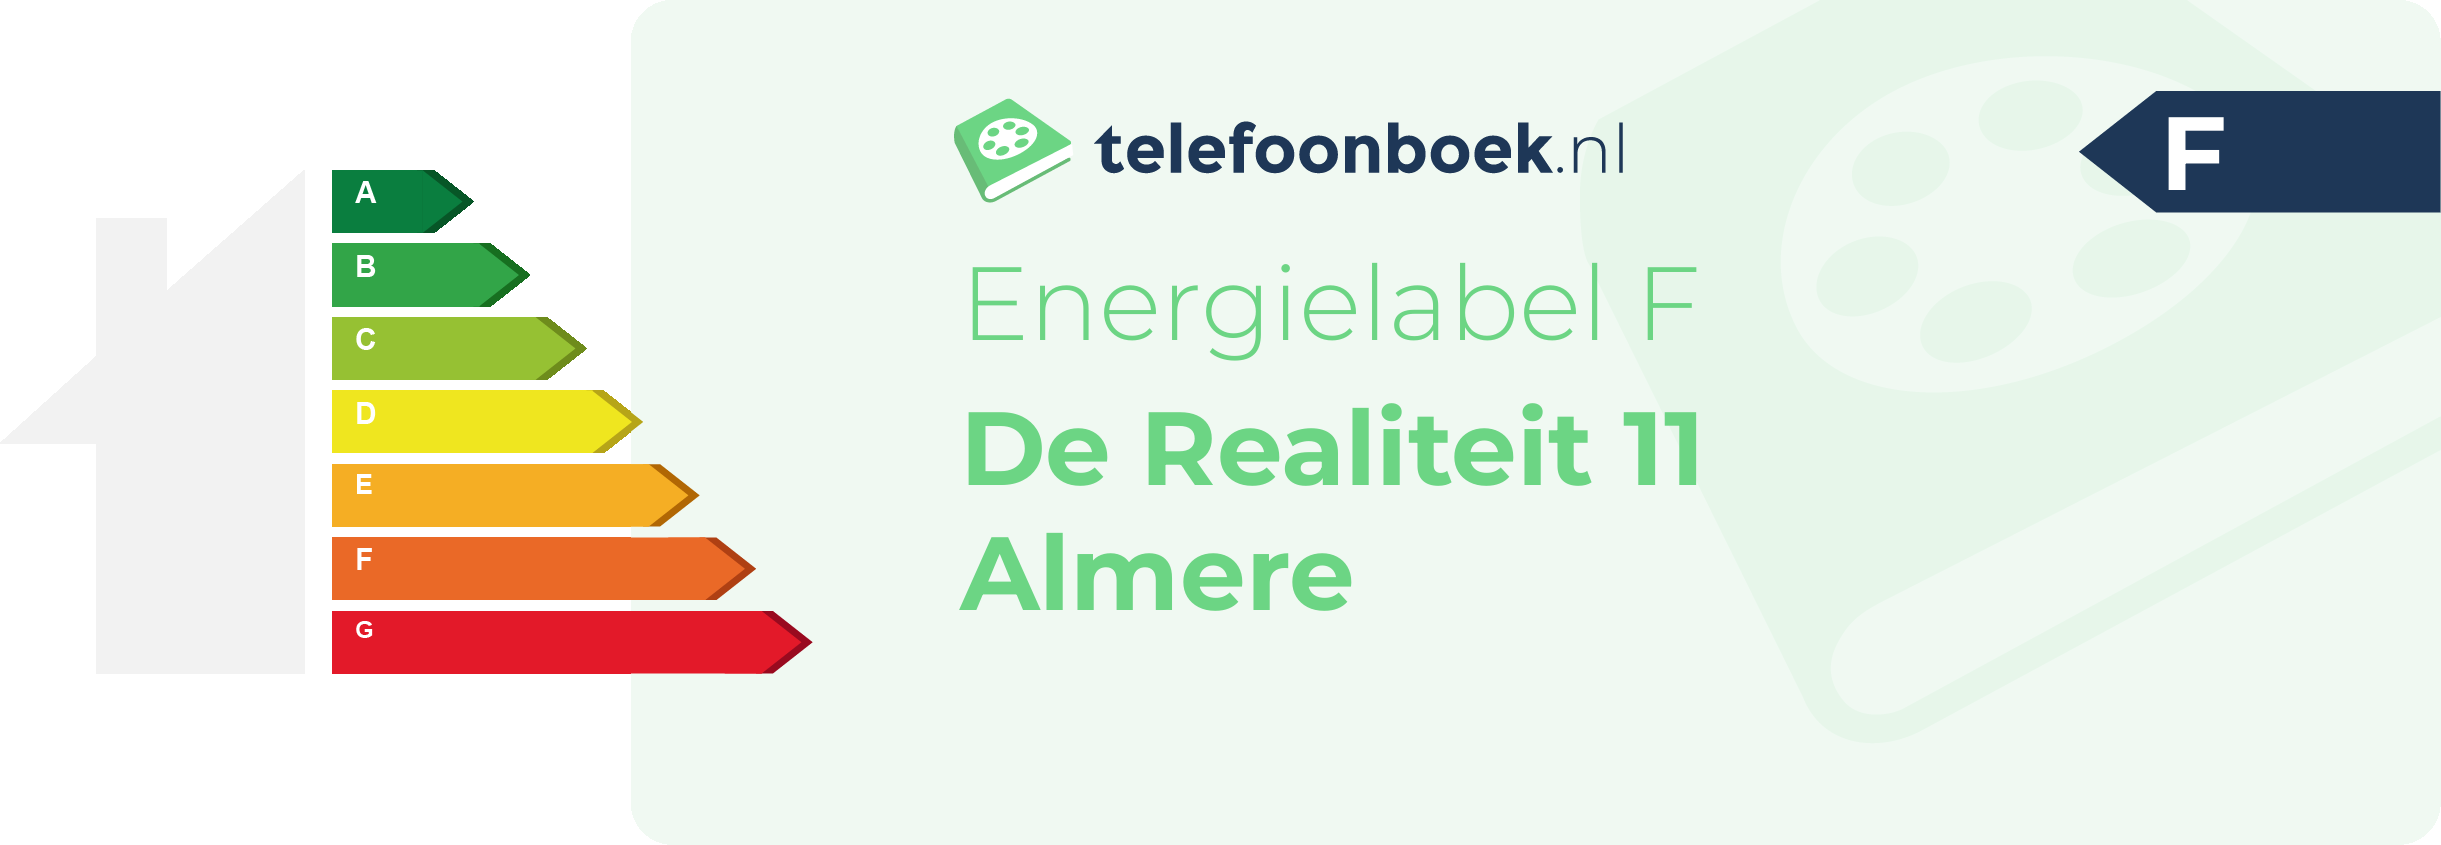 Energielabel De Realiteit 11 Almere